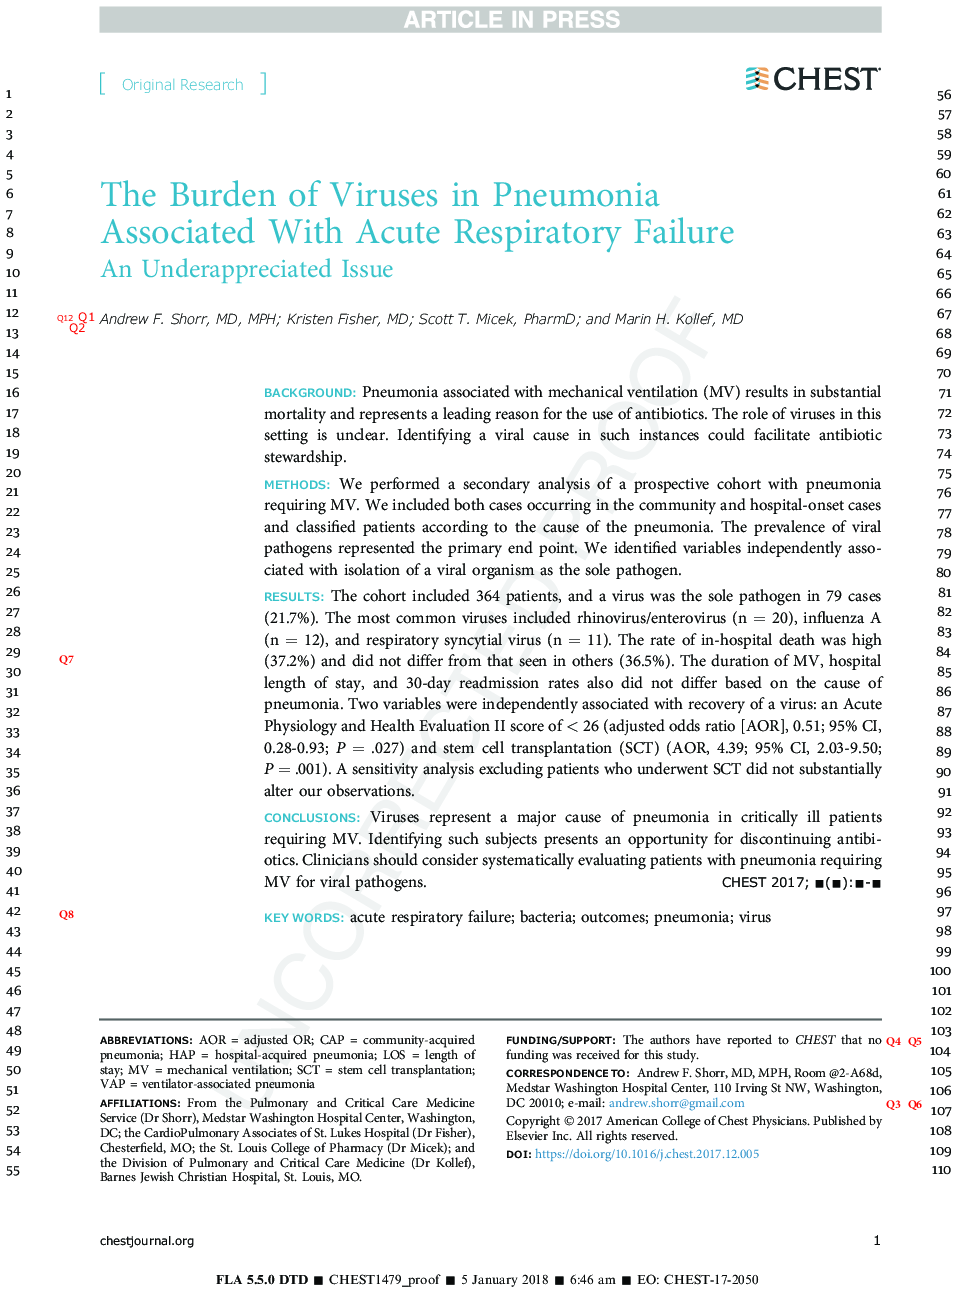 باروری ویروس های پنومونی همراه با نارسایی حاد تنفسی 